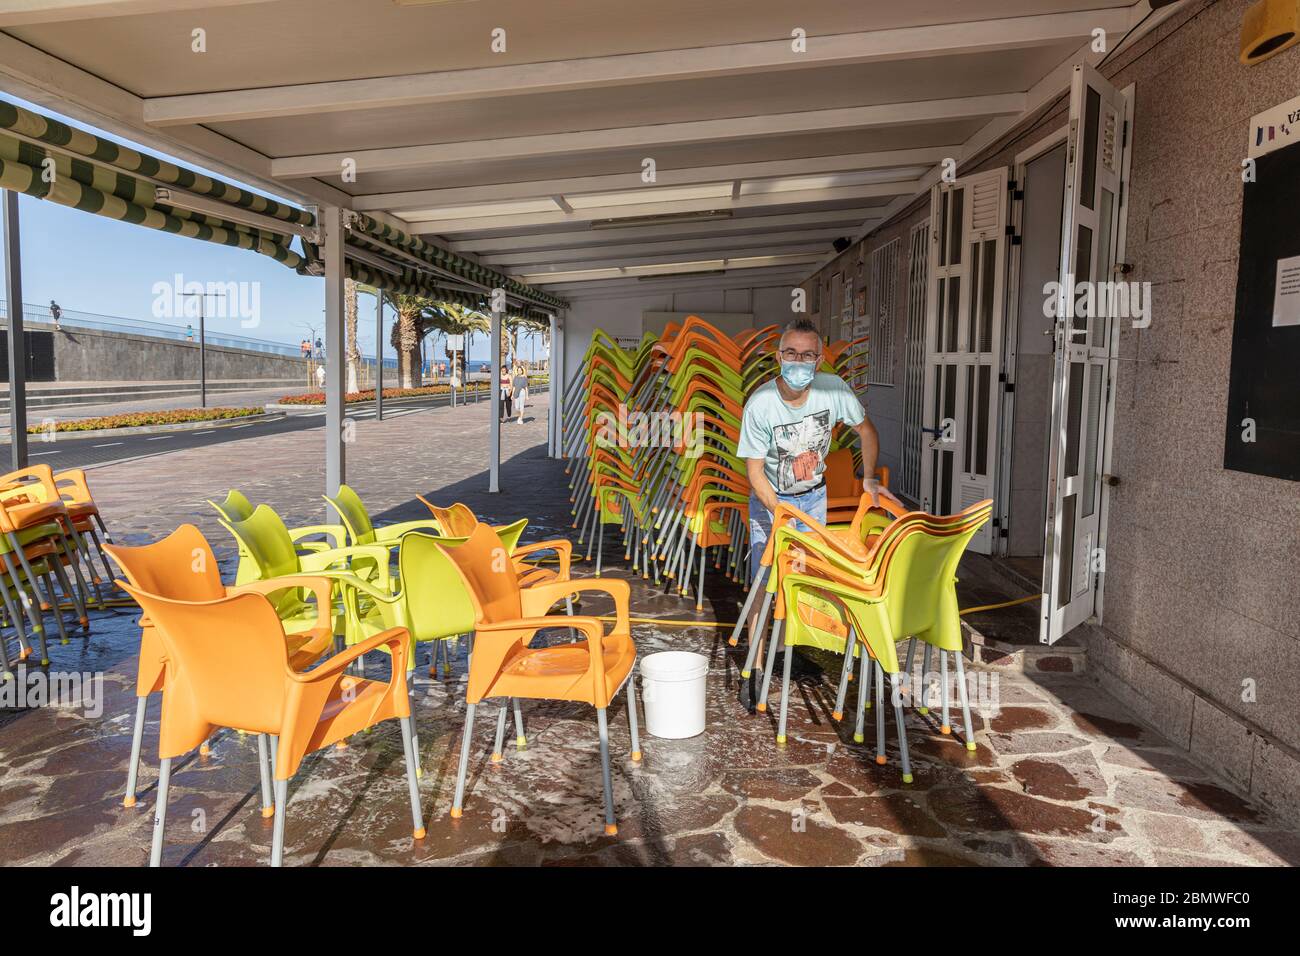 In Vorbereitung auf die Eröffnung reinigt ein Barbesitzer die Terrassenmöbel vor Phase 1 der Deeskalation des Covid 19 State of Emergency Lock down, Playa San Stockfoto